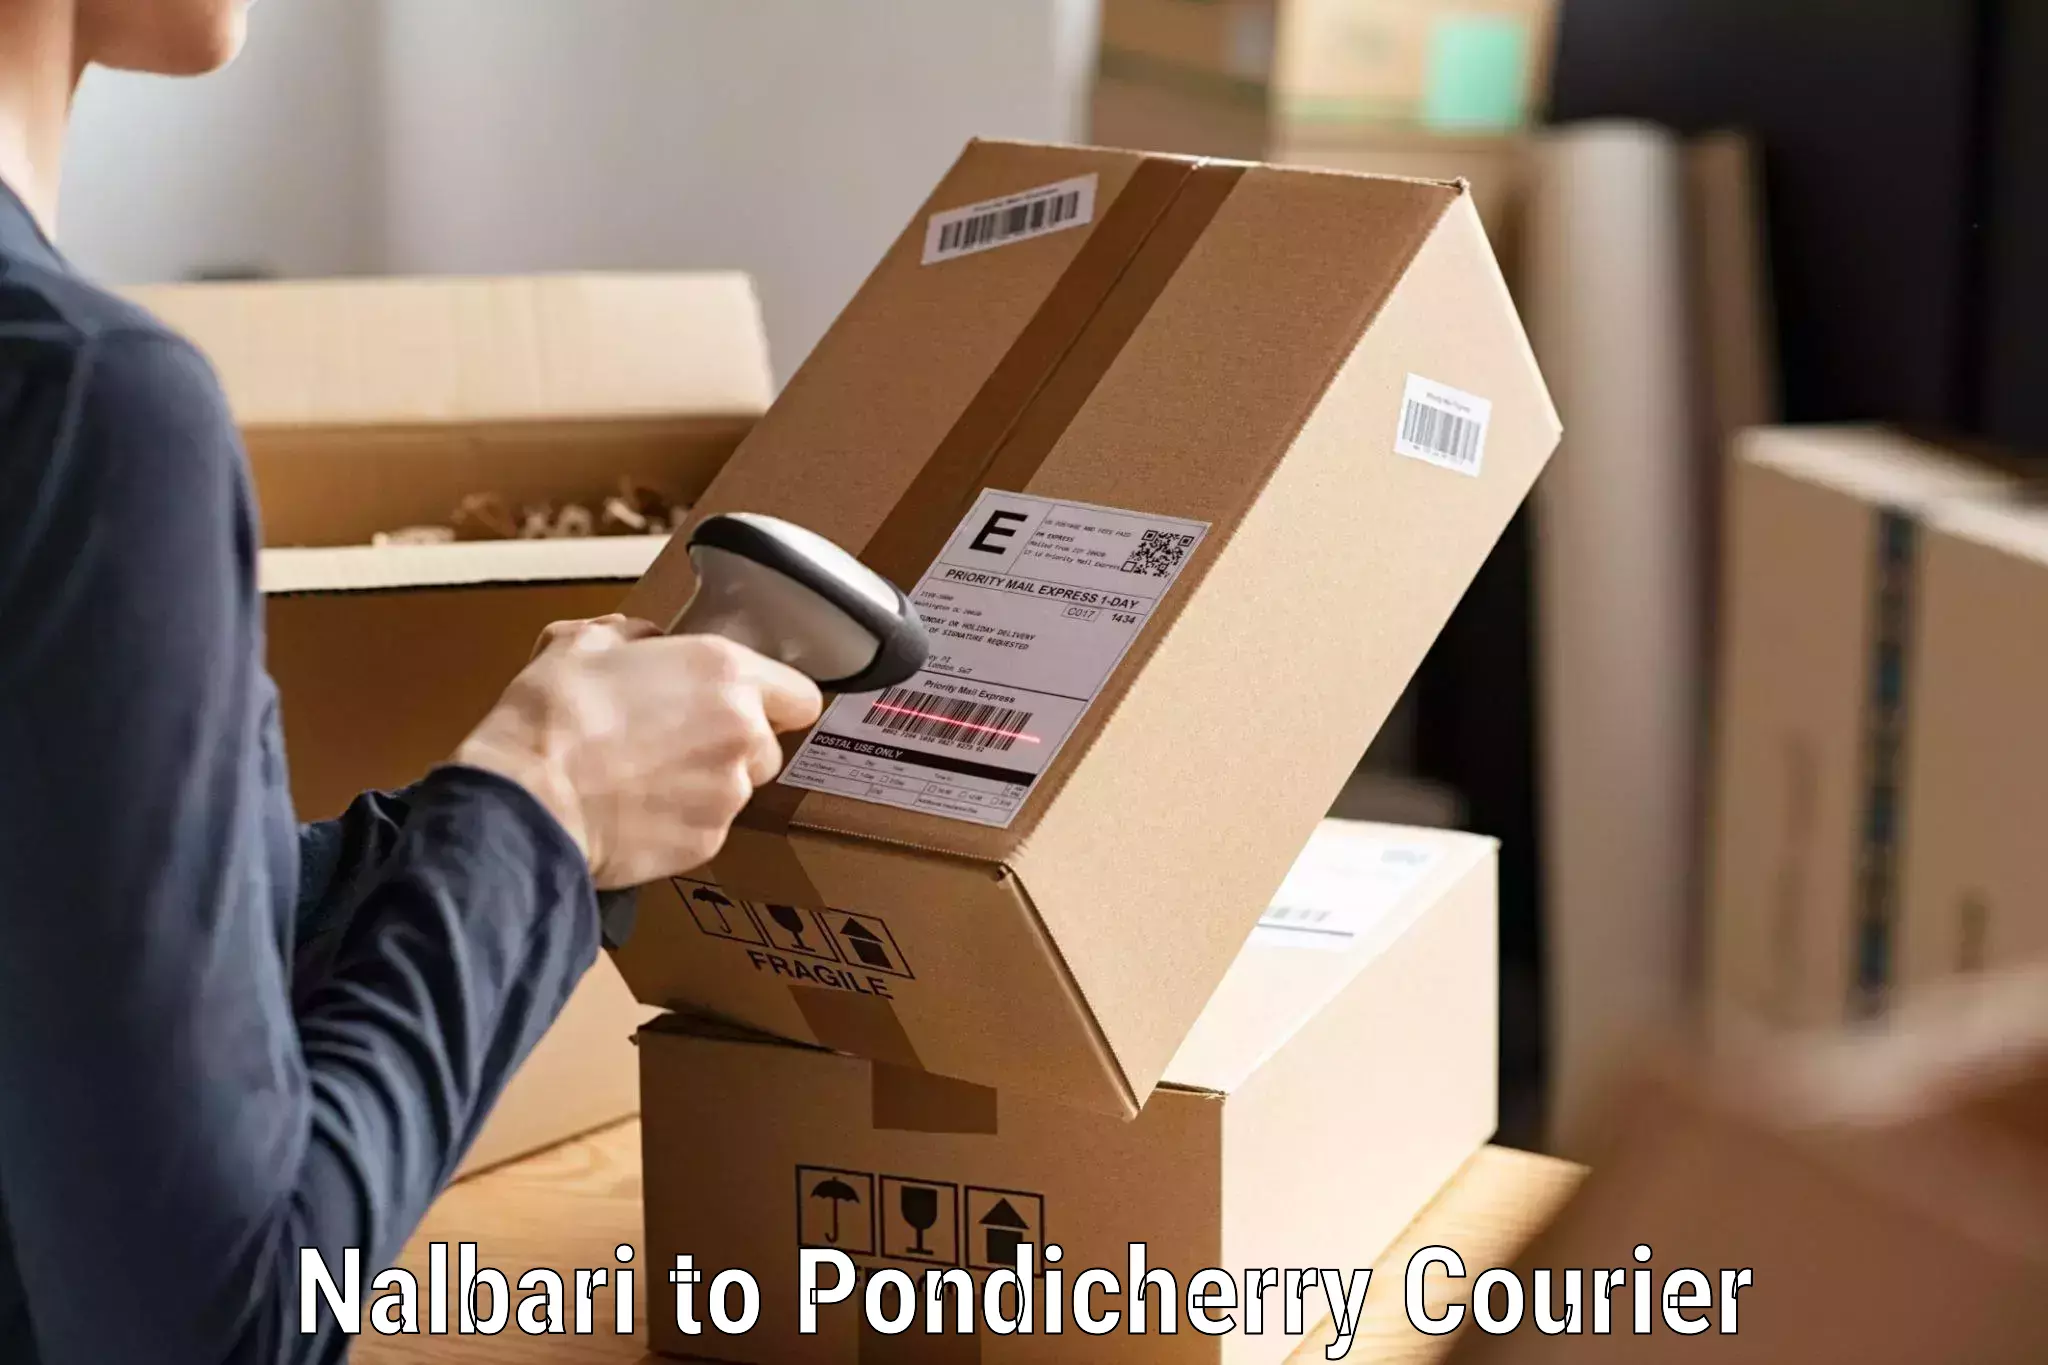 Efficient order fulfillment Nalbari to Pondicherry